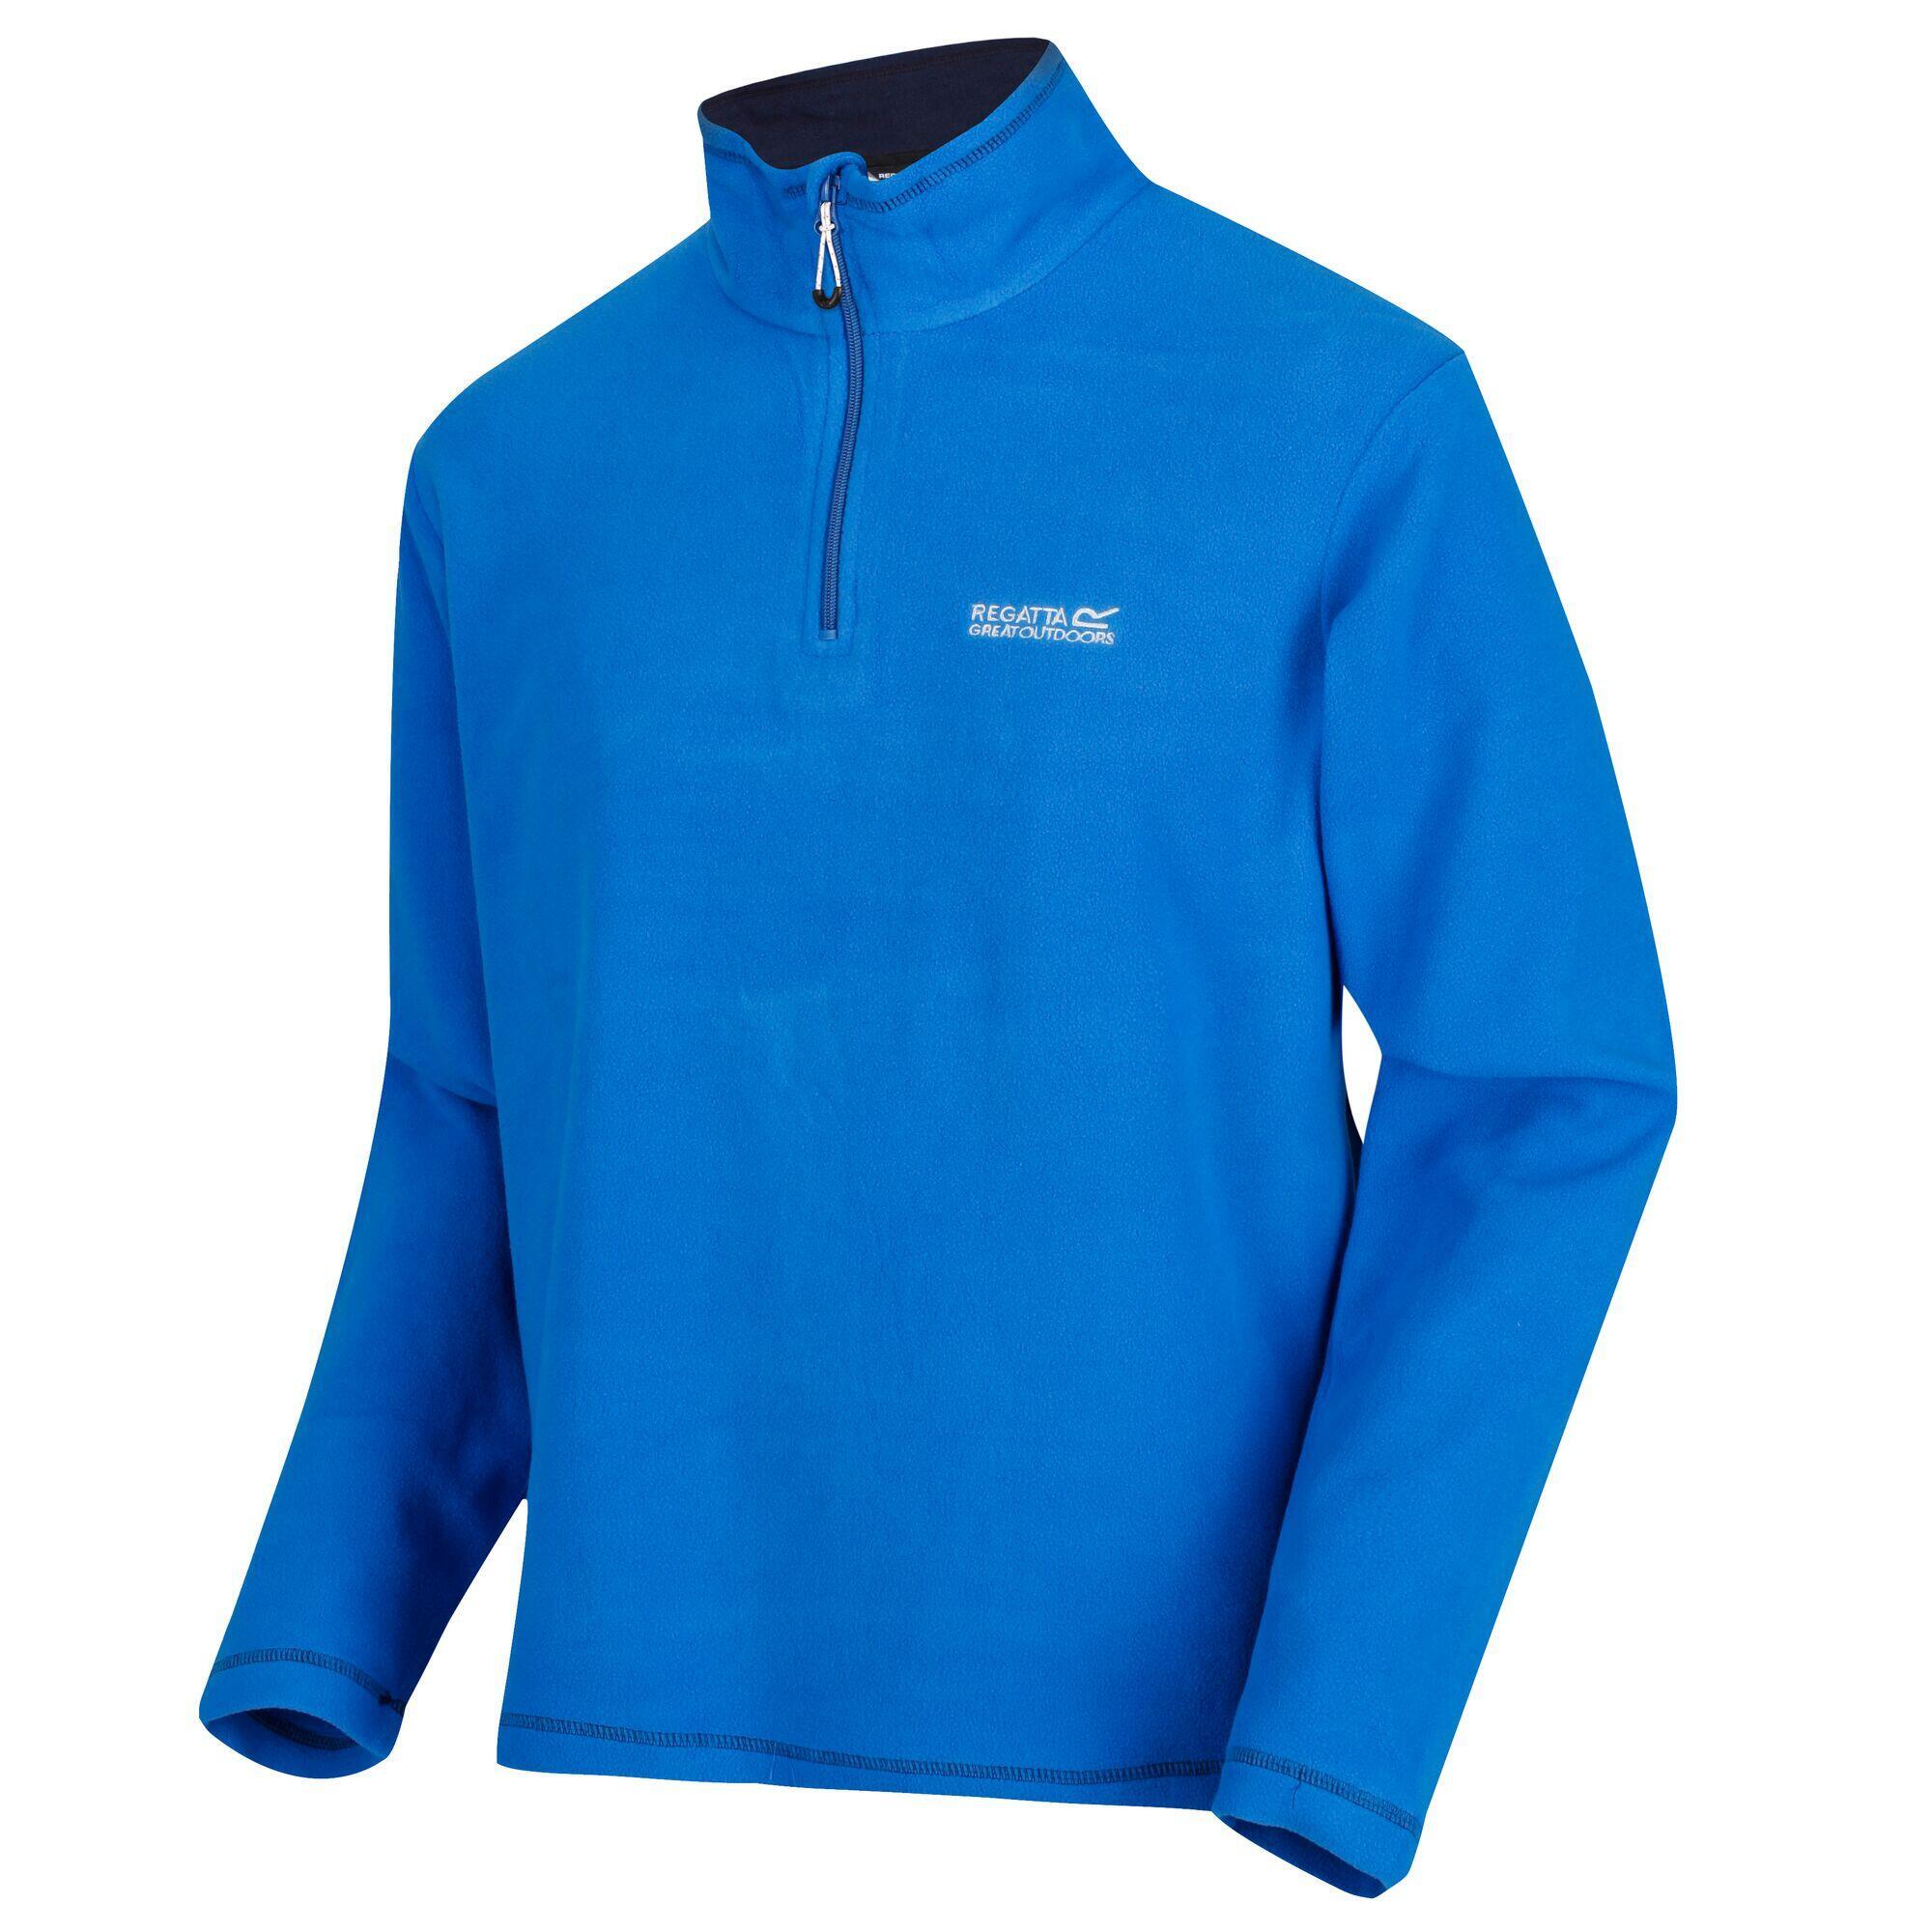 Куртка Regatta Thompson мужская флисовая, синий куртка флисовая мужская lancaster черная размер s